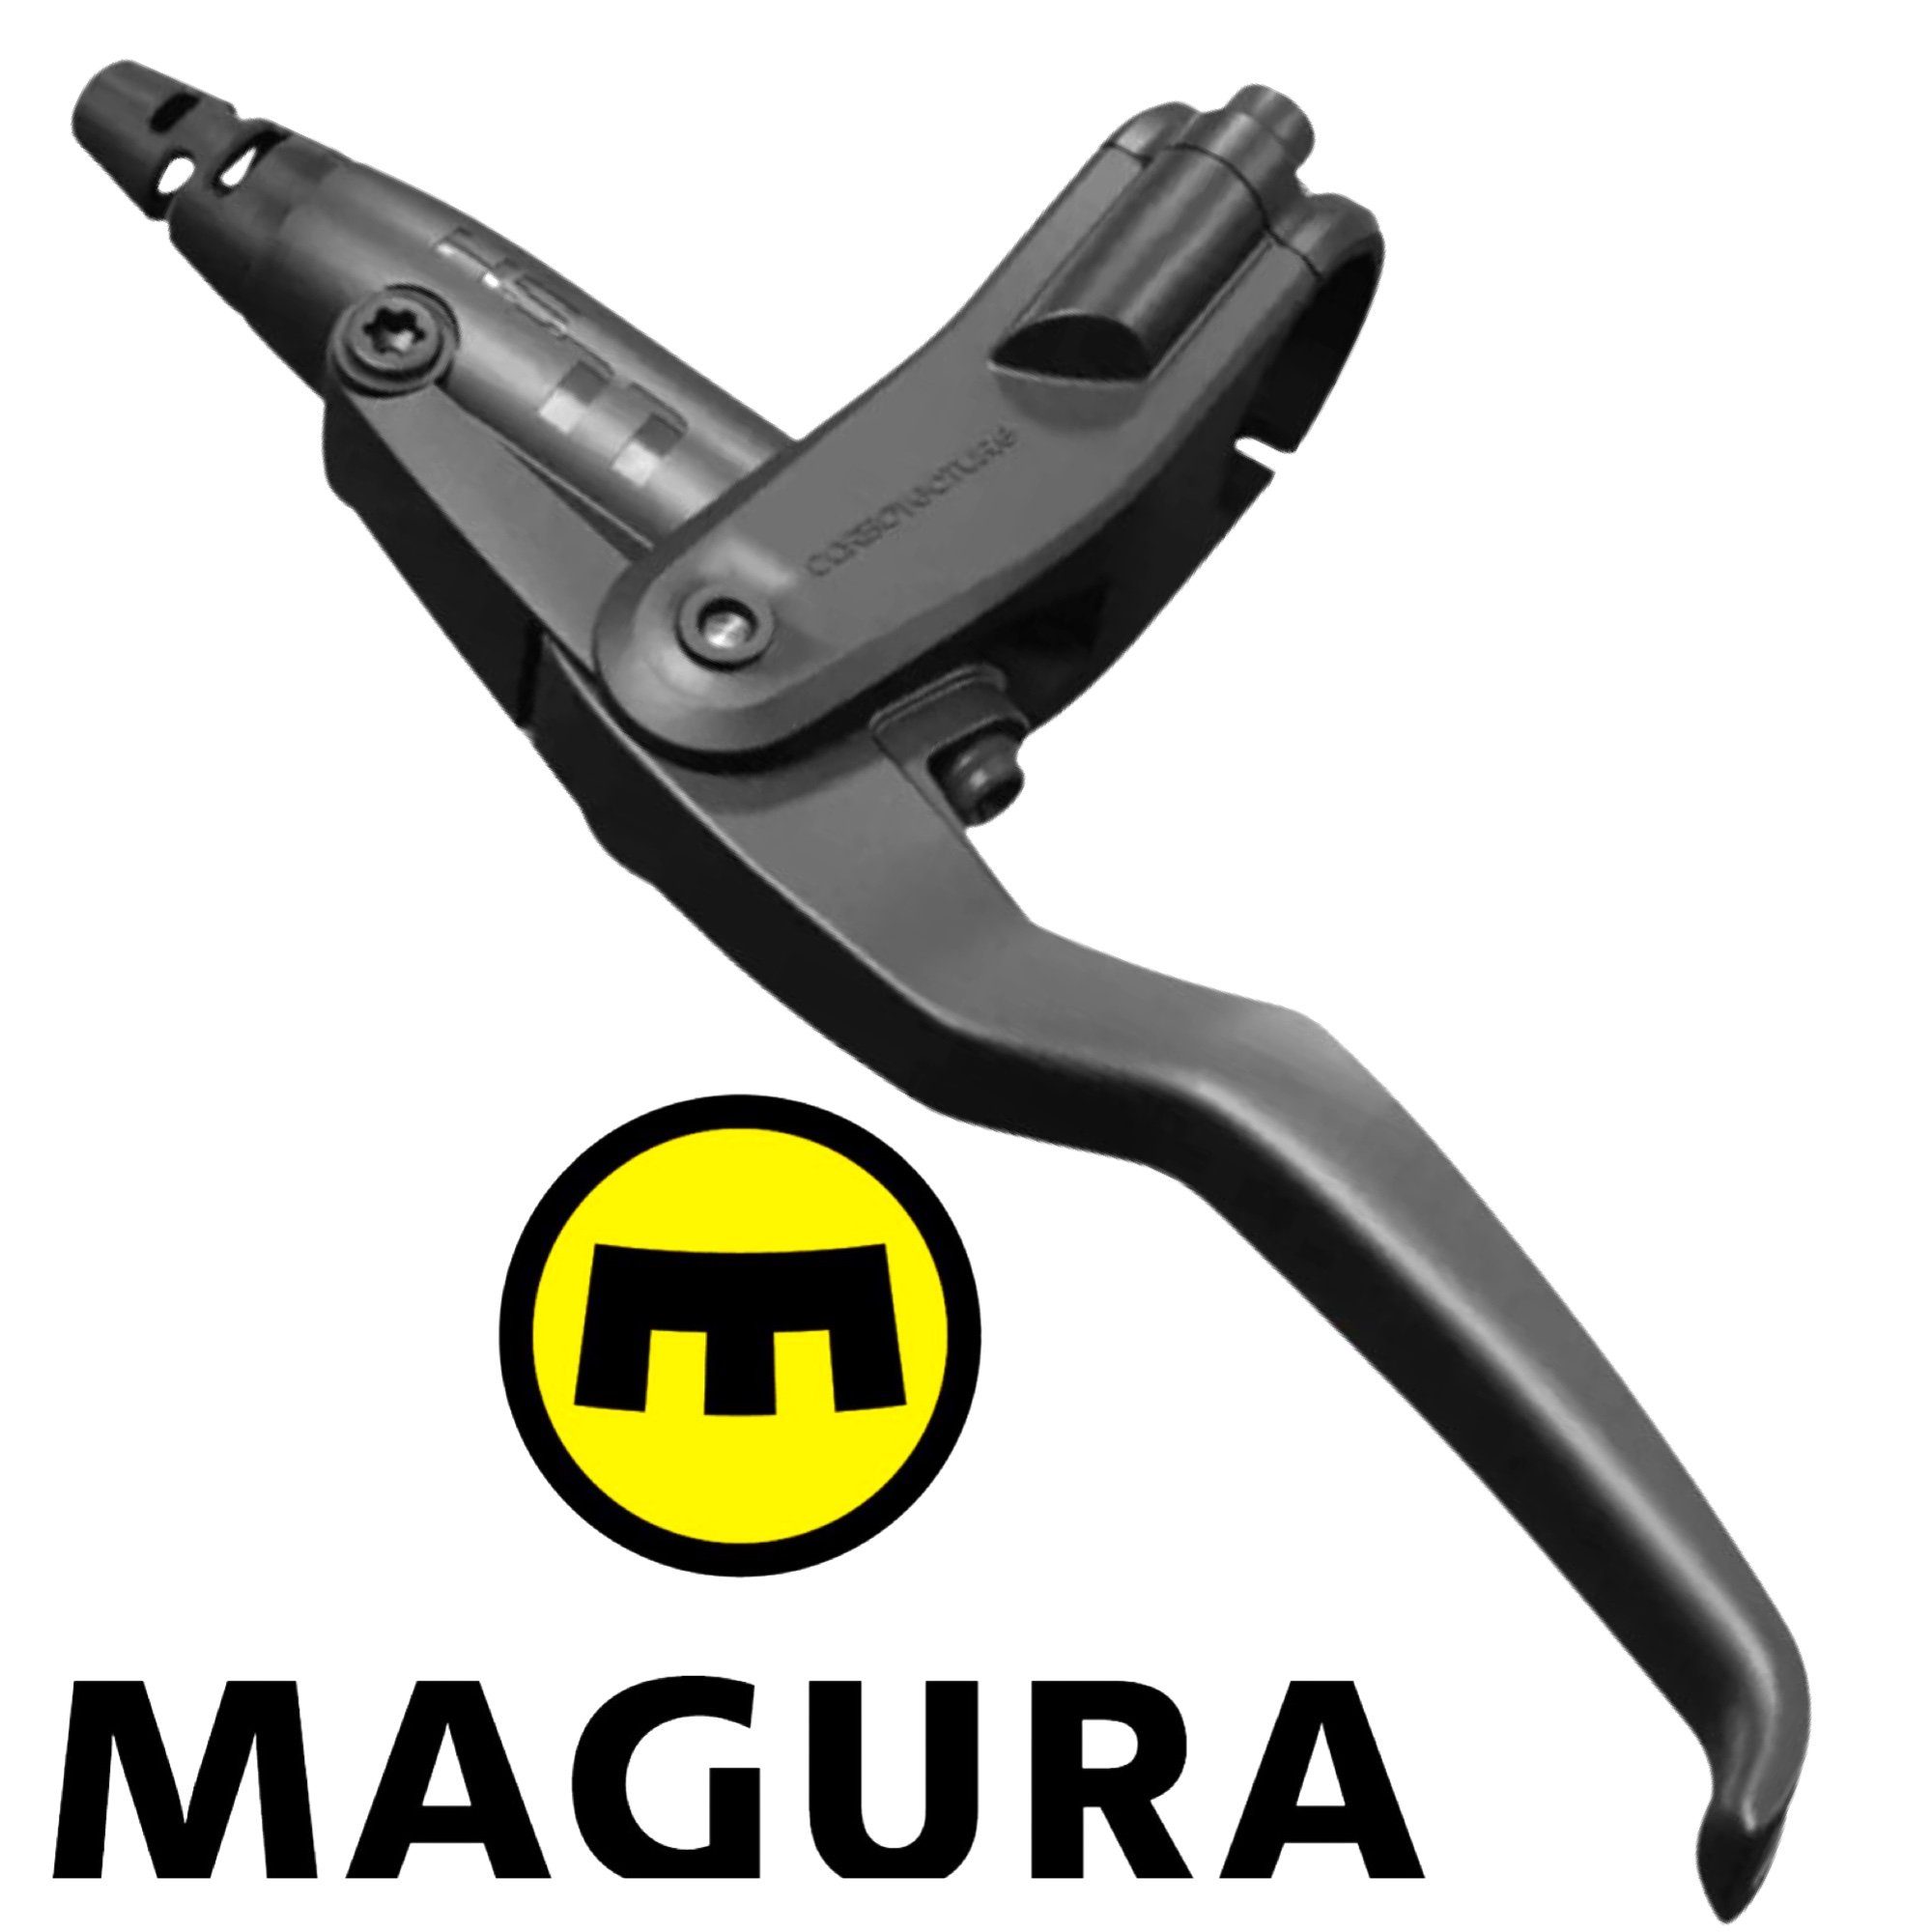 Magura Bremshebel HS11 4-Finger Leichtbau, schwarz, Stück